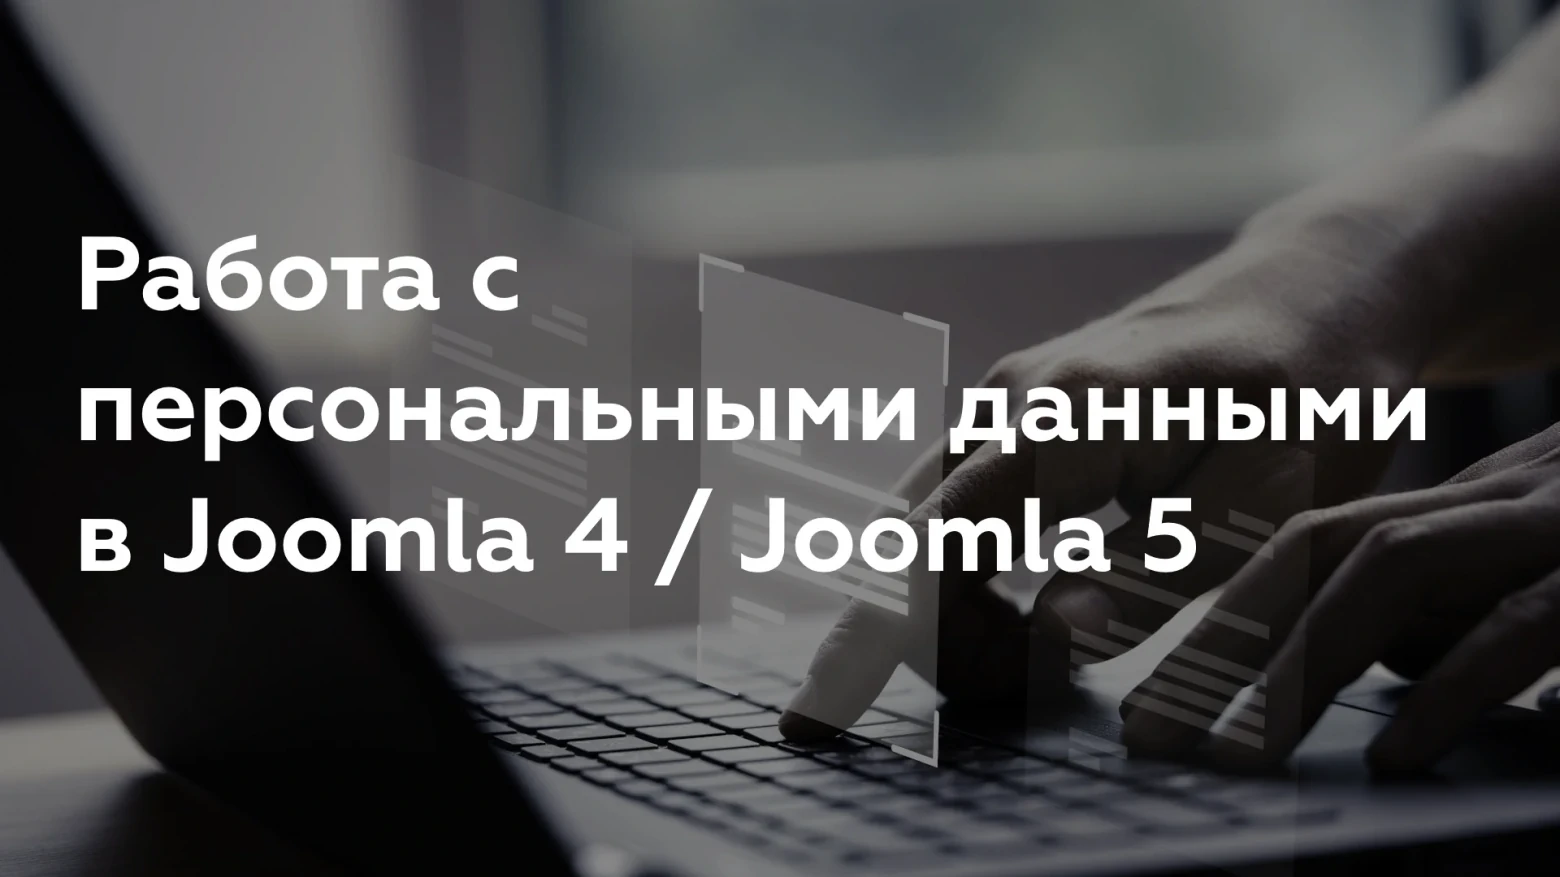 Работа с персональными данными в Joomla 4 / Joomla 5 статья